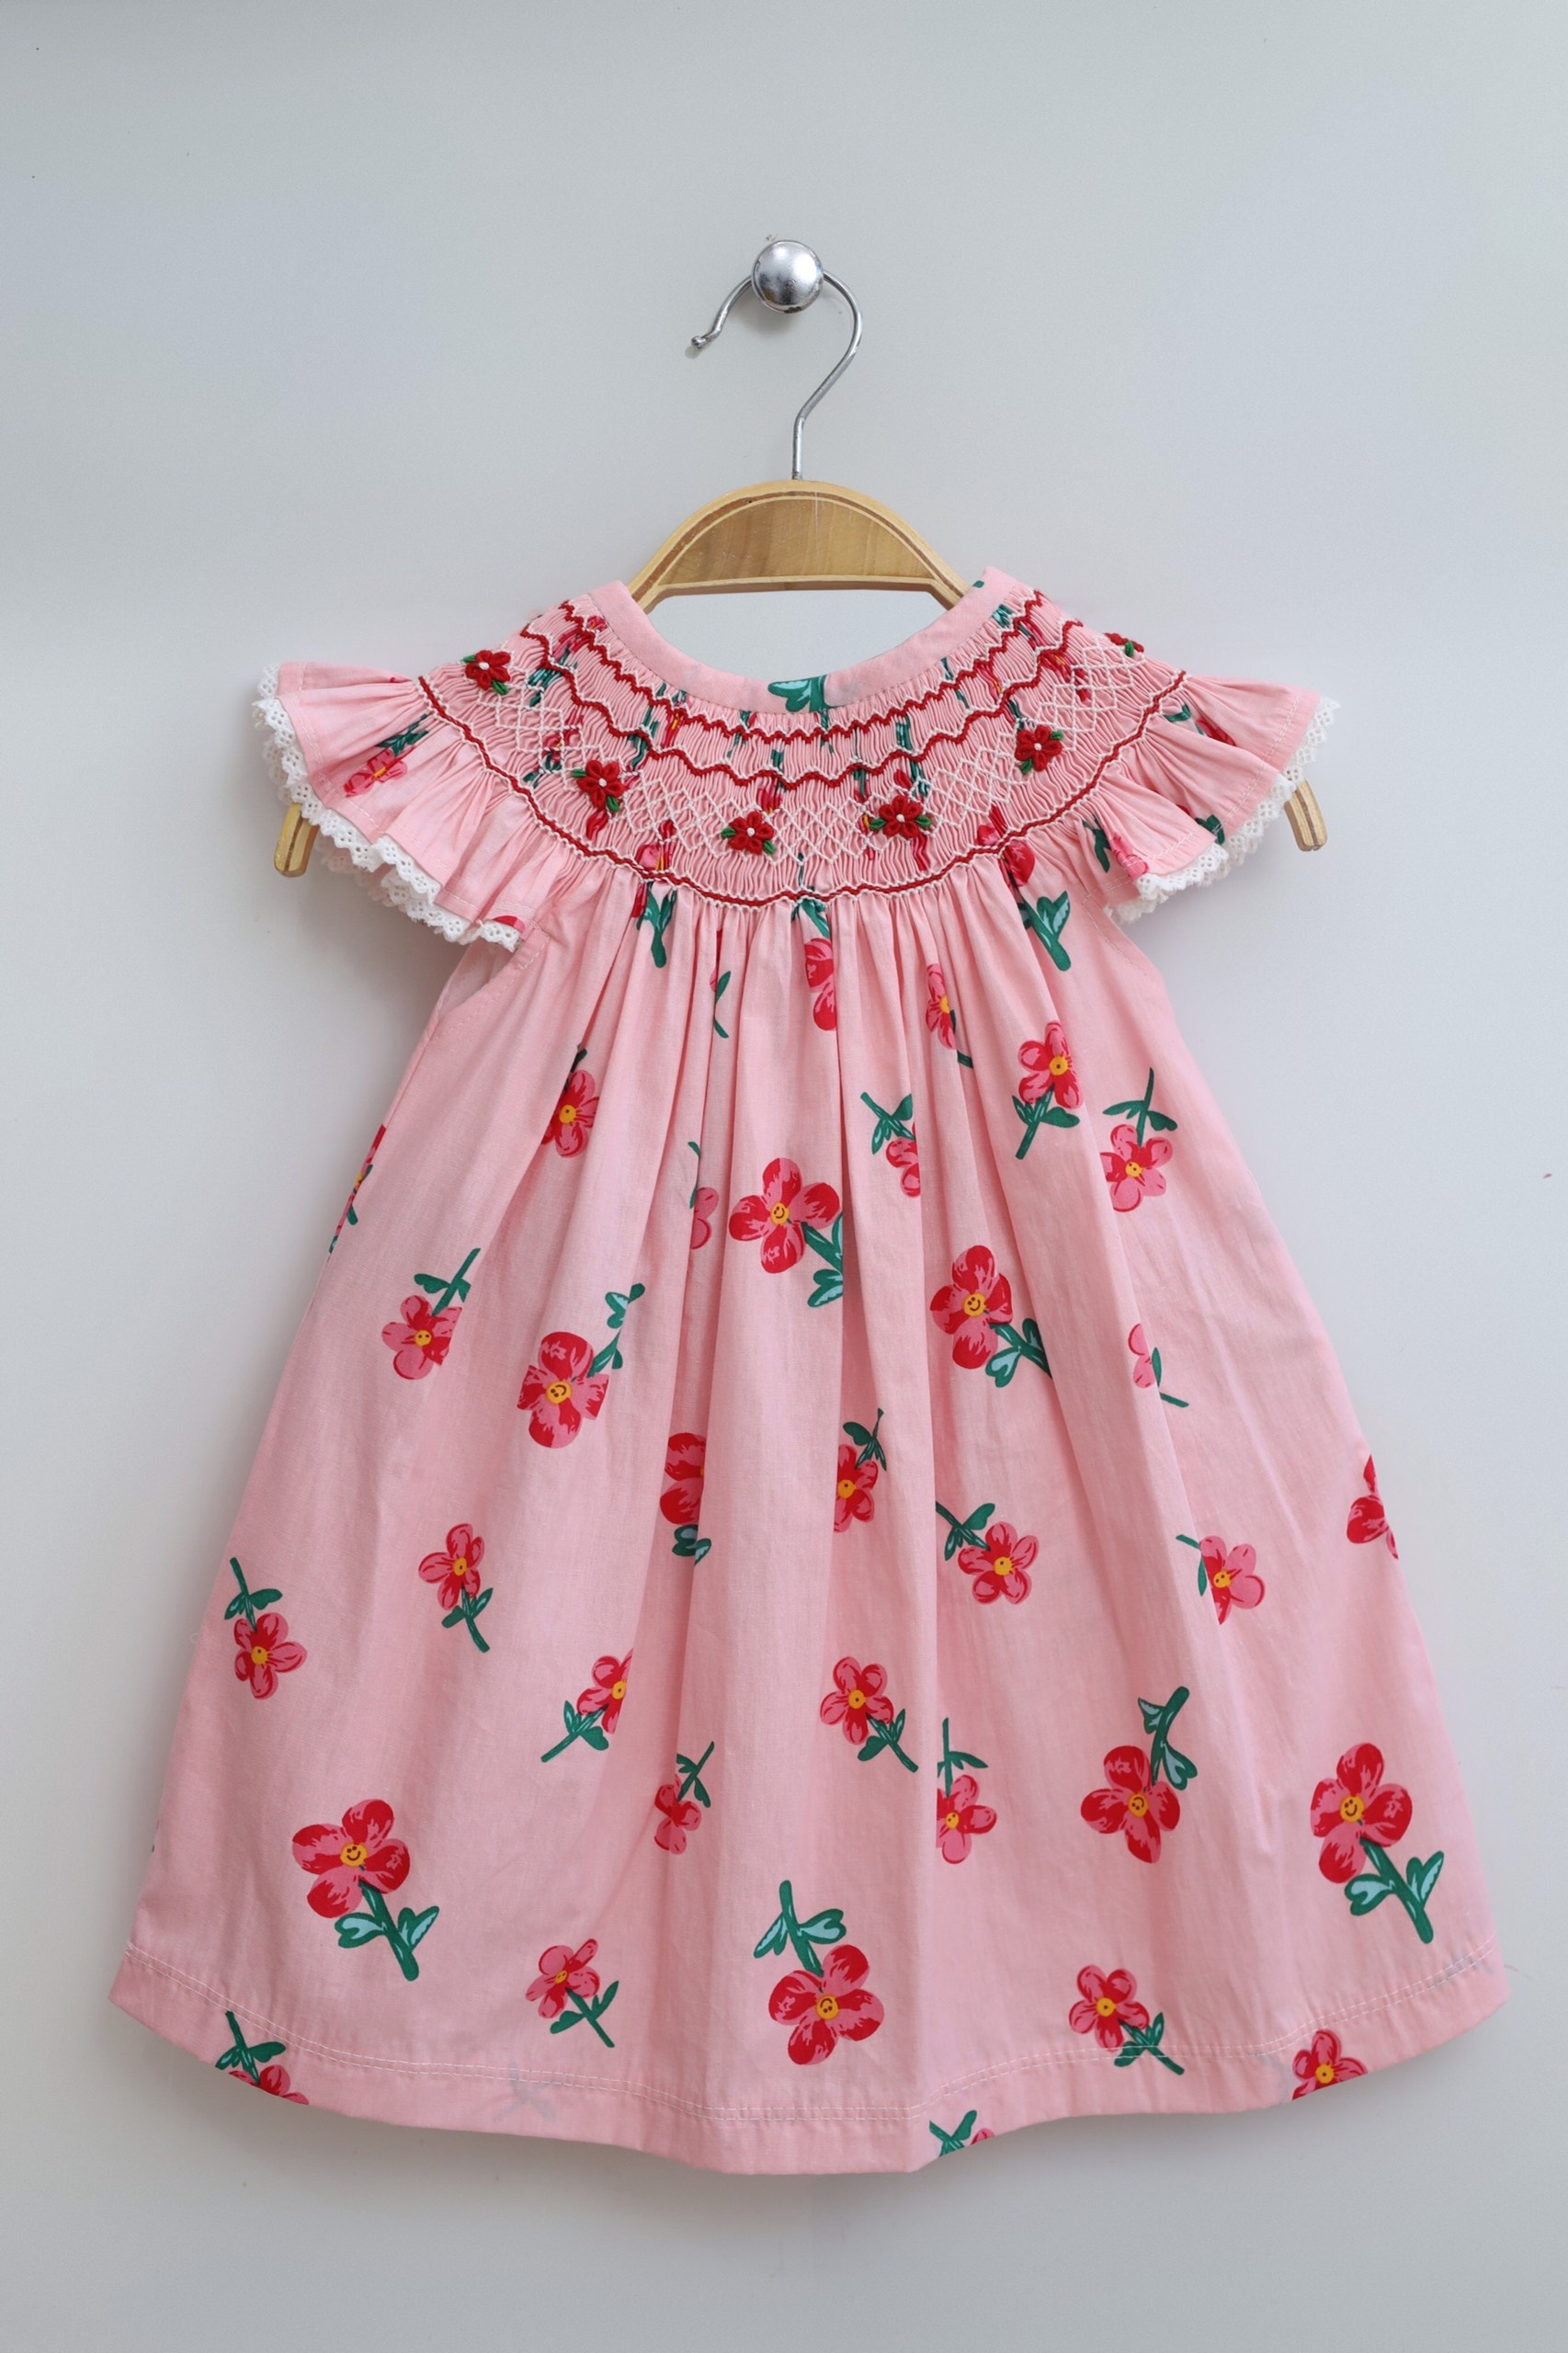 Summer floral dress for girls